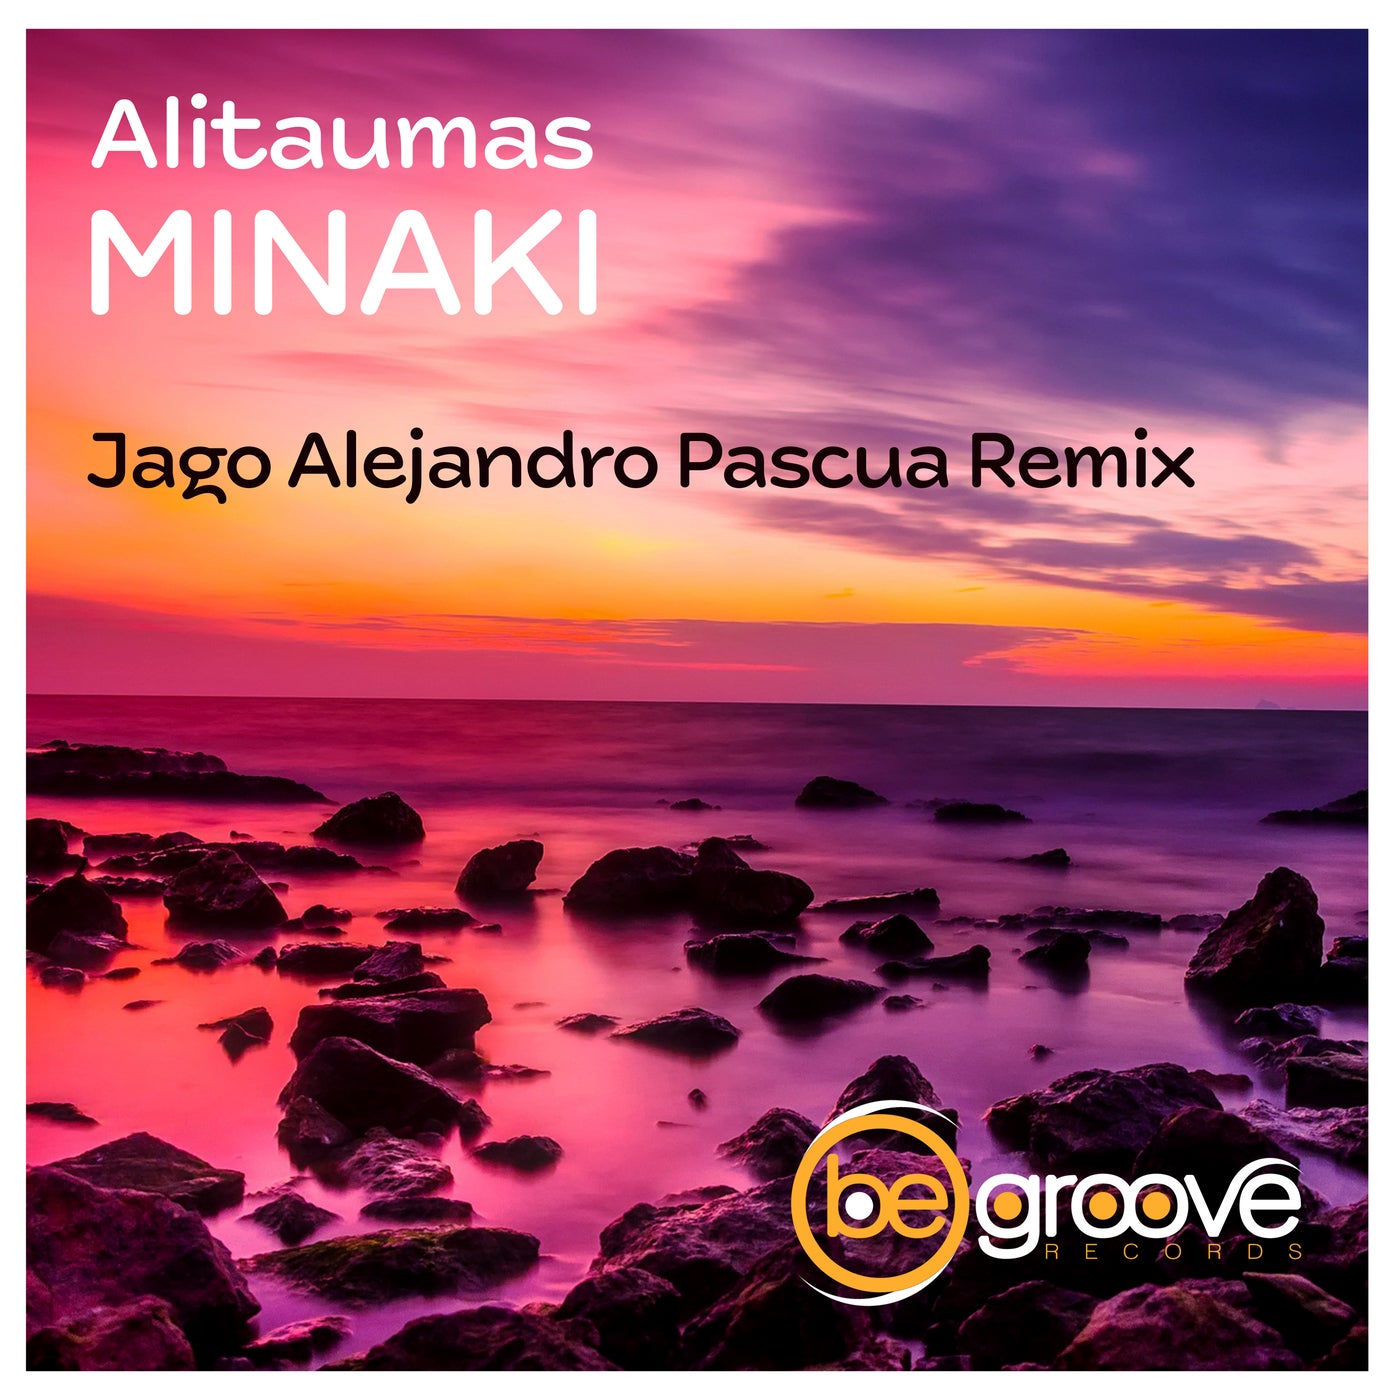 Minaki (Jago Alejandro Pascua Remix)